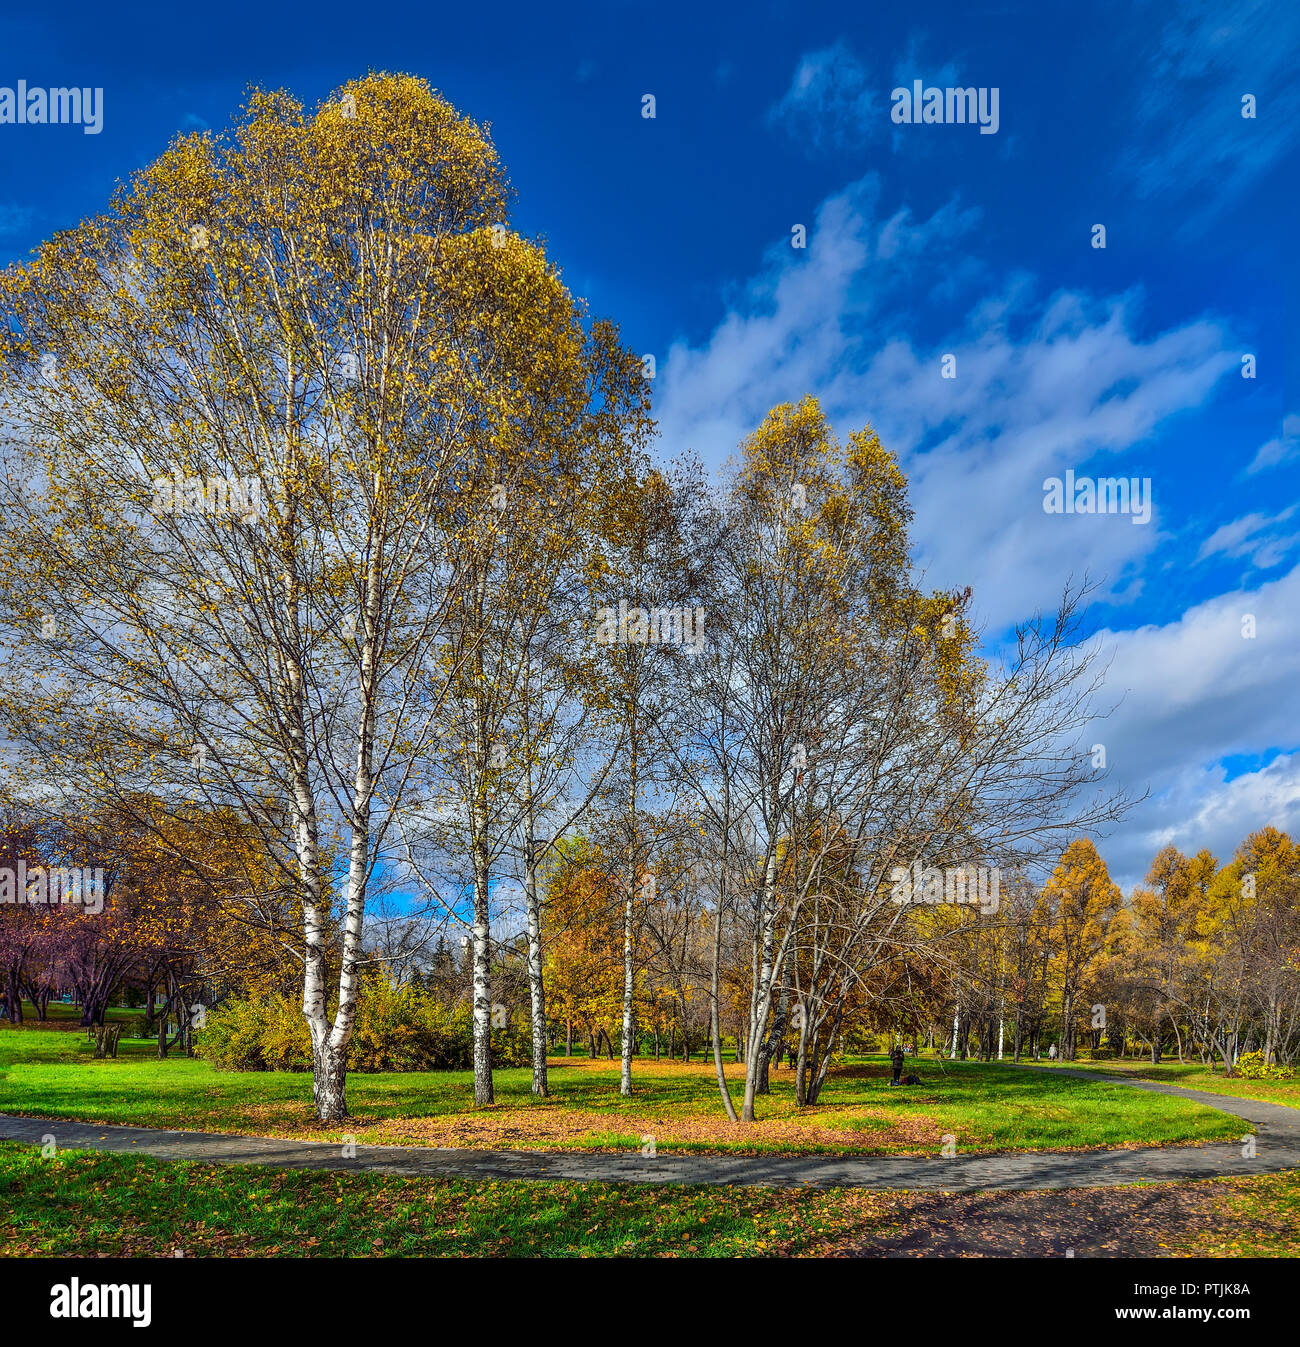 Schöne romantische Landschaft mit goldenen Blätter der Birken im herbstlichen Stadtpark - helle Herbst Hintergrund bei warmen und sonnigen Oktober Tag mit blauem Himmel Stockfoto